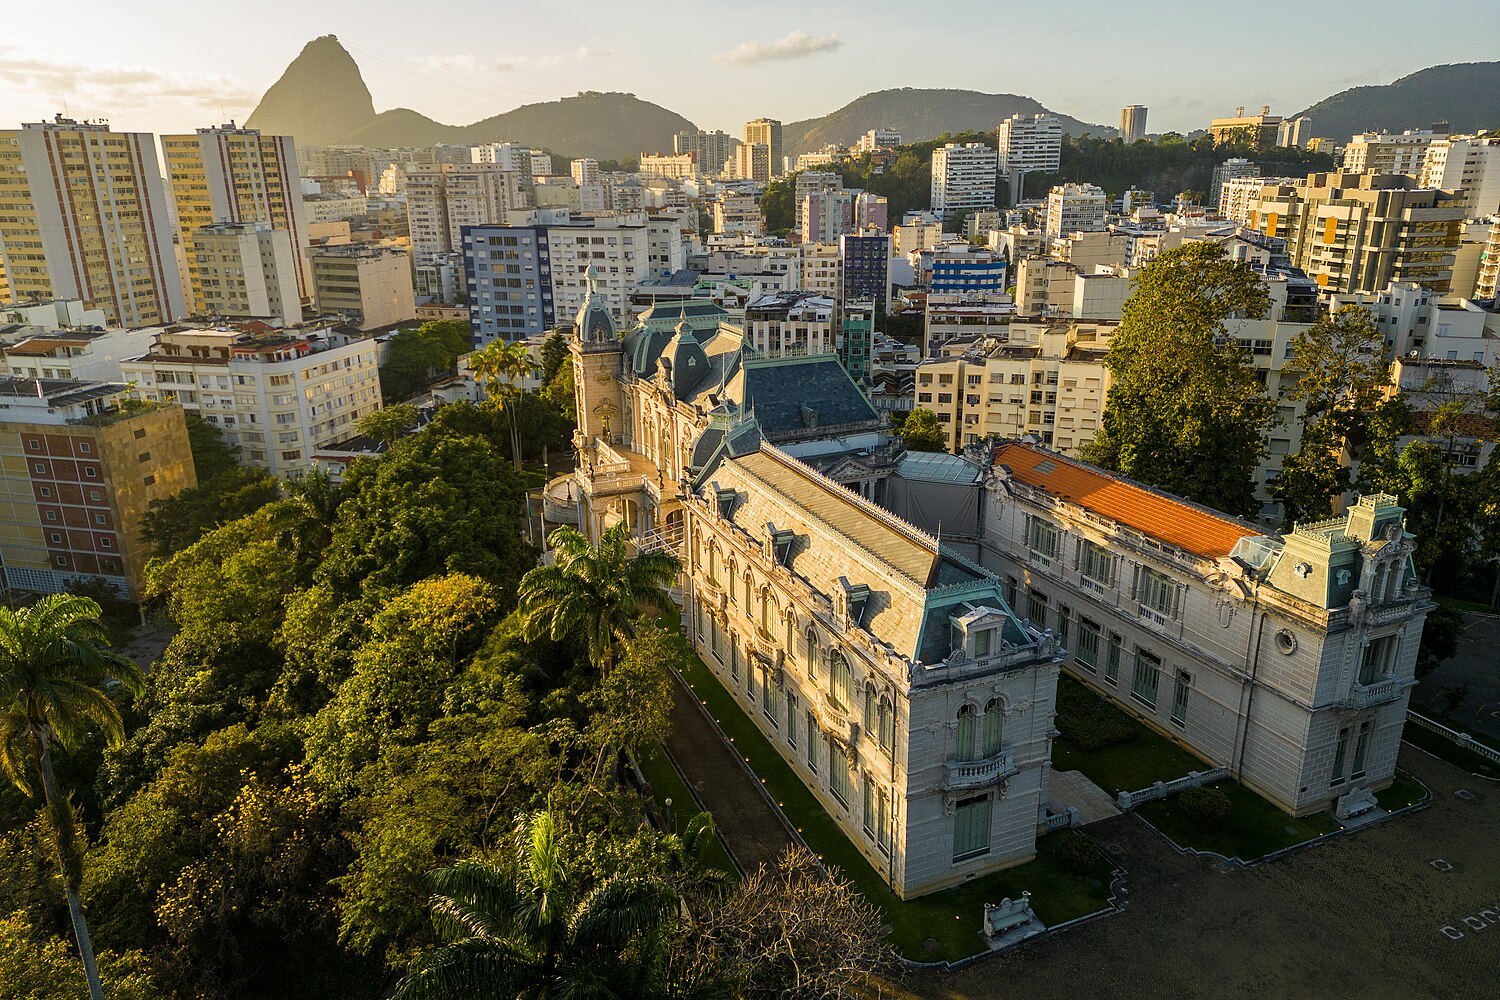 Clinica Popular Meier Rio de Janeiro RJ - DIVULGAÇÃO & CIA